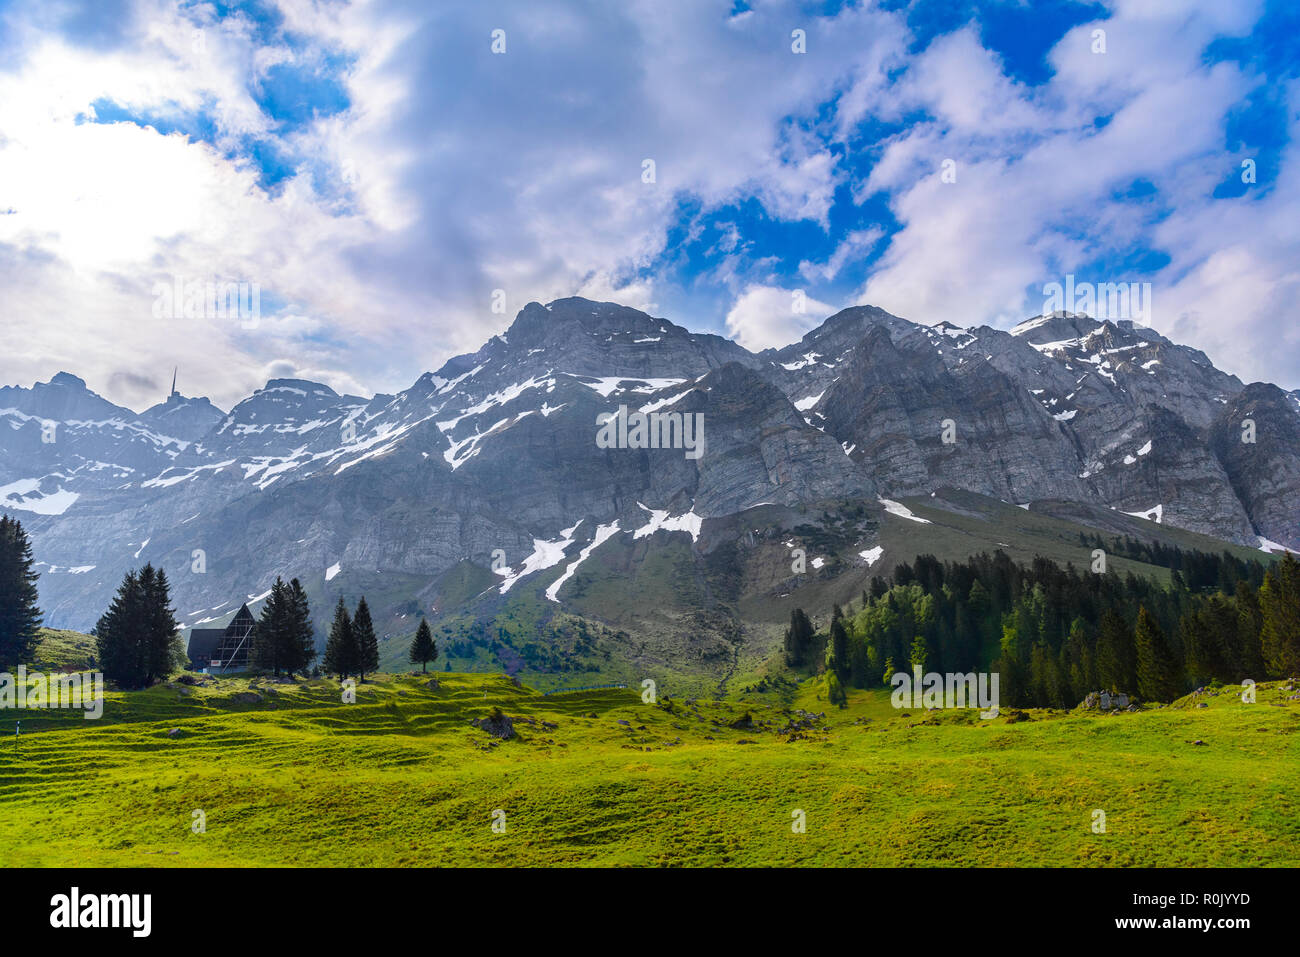 Alps mountains and fields, Schoenengrund, Hinterland, Appenzell Ausserrhoden Switzerland Stock Photo